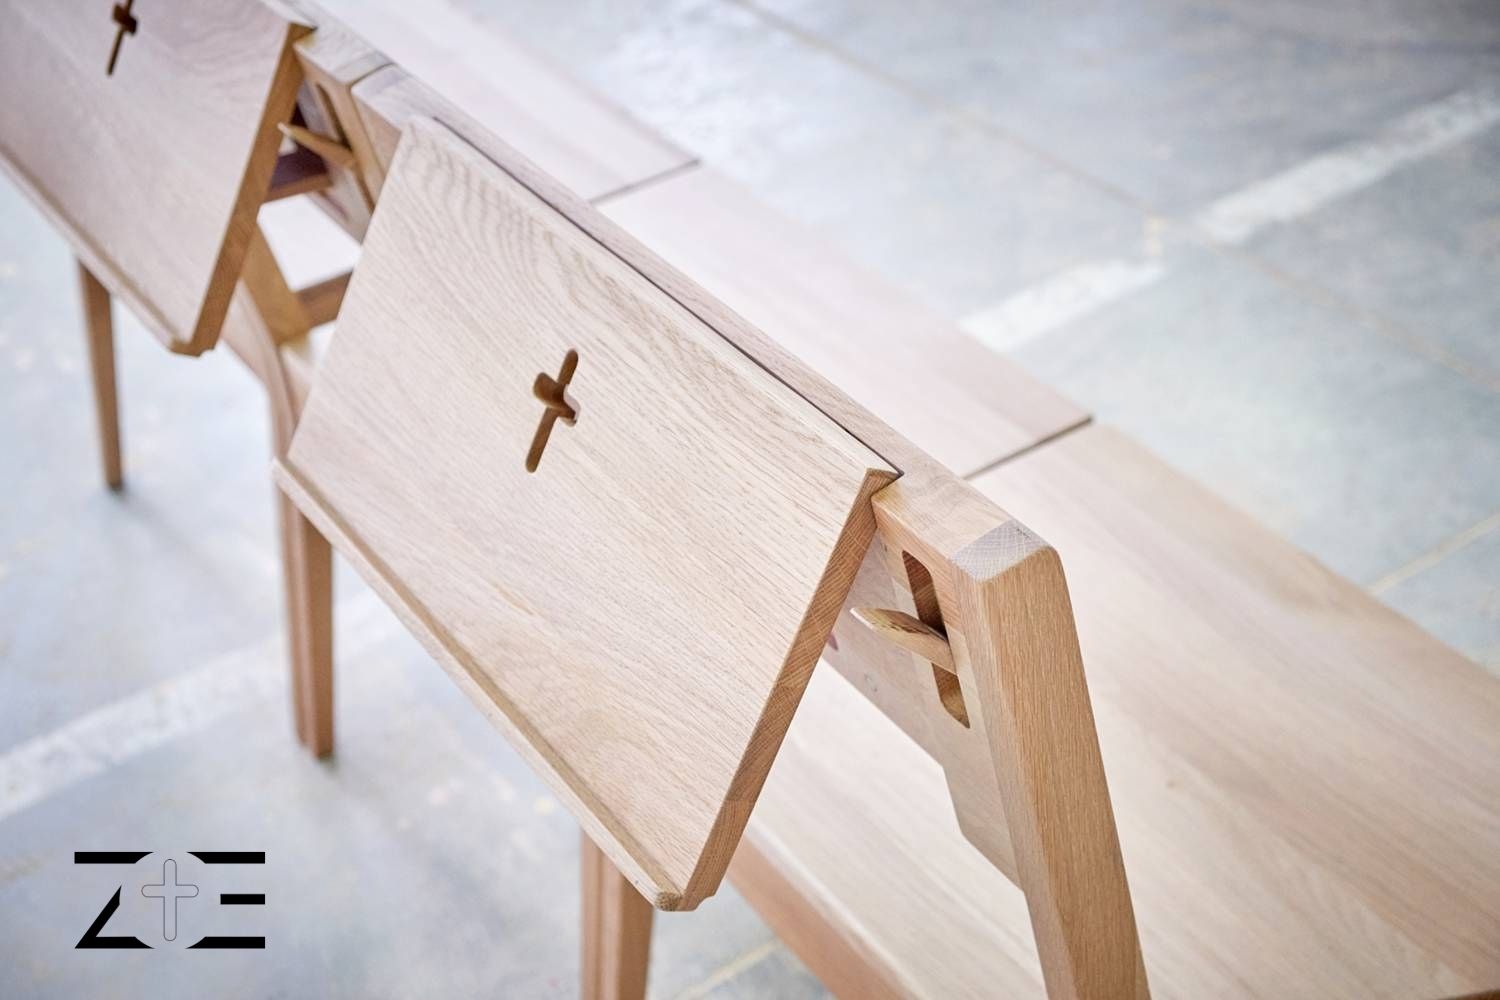 ZOE gyülekezeti székek mágnesekkel összekötve egy pad egységbe, logóval a fotó bal alsó sarkában